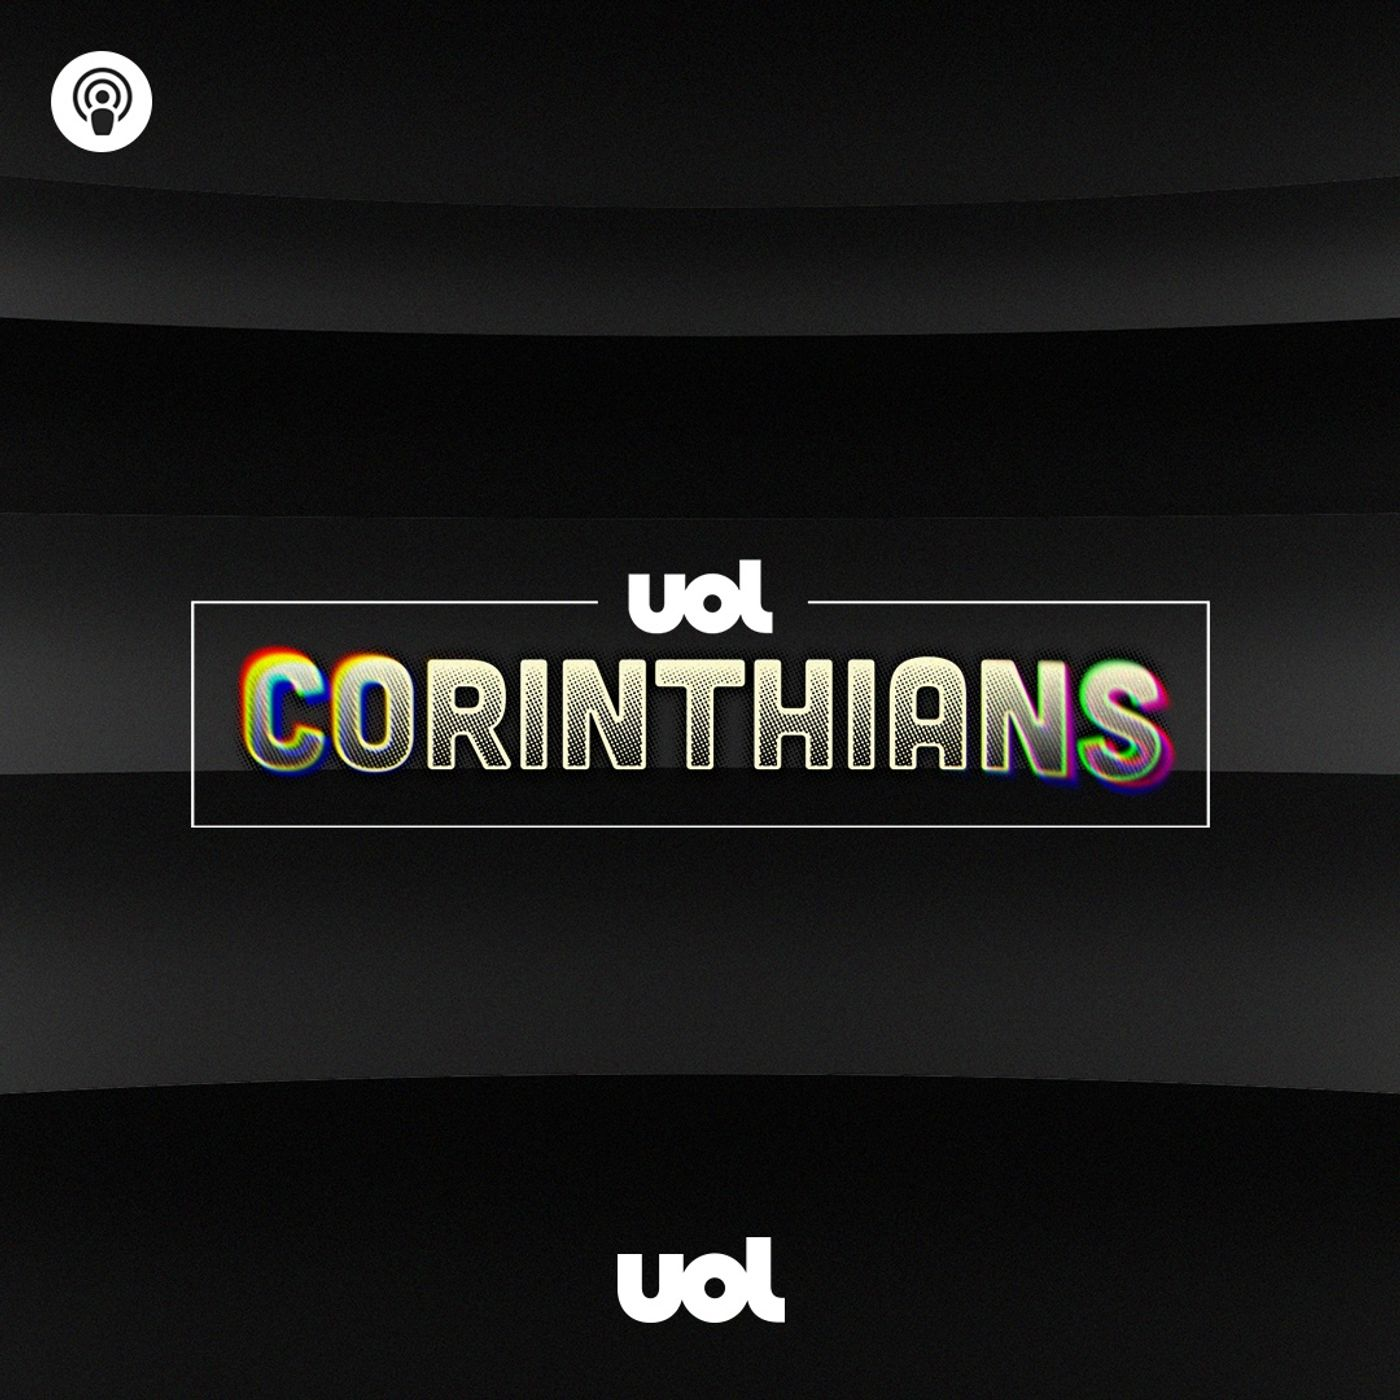 #95: Em casa, Corinthians garante vitória contra o Coxa e segue na cola dos líderes